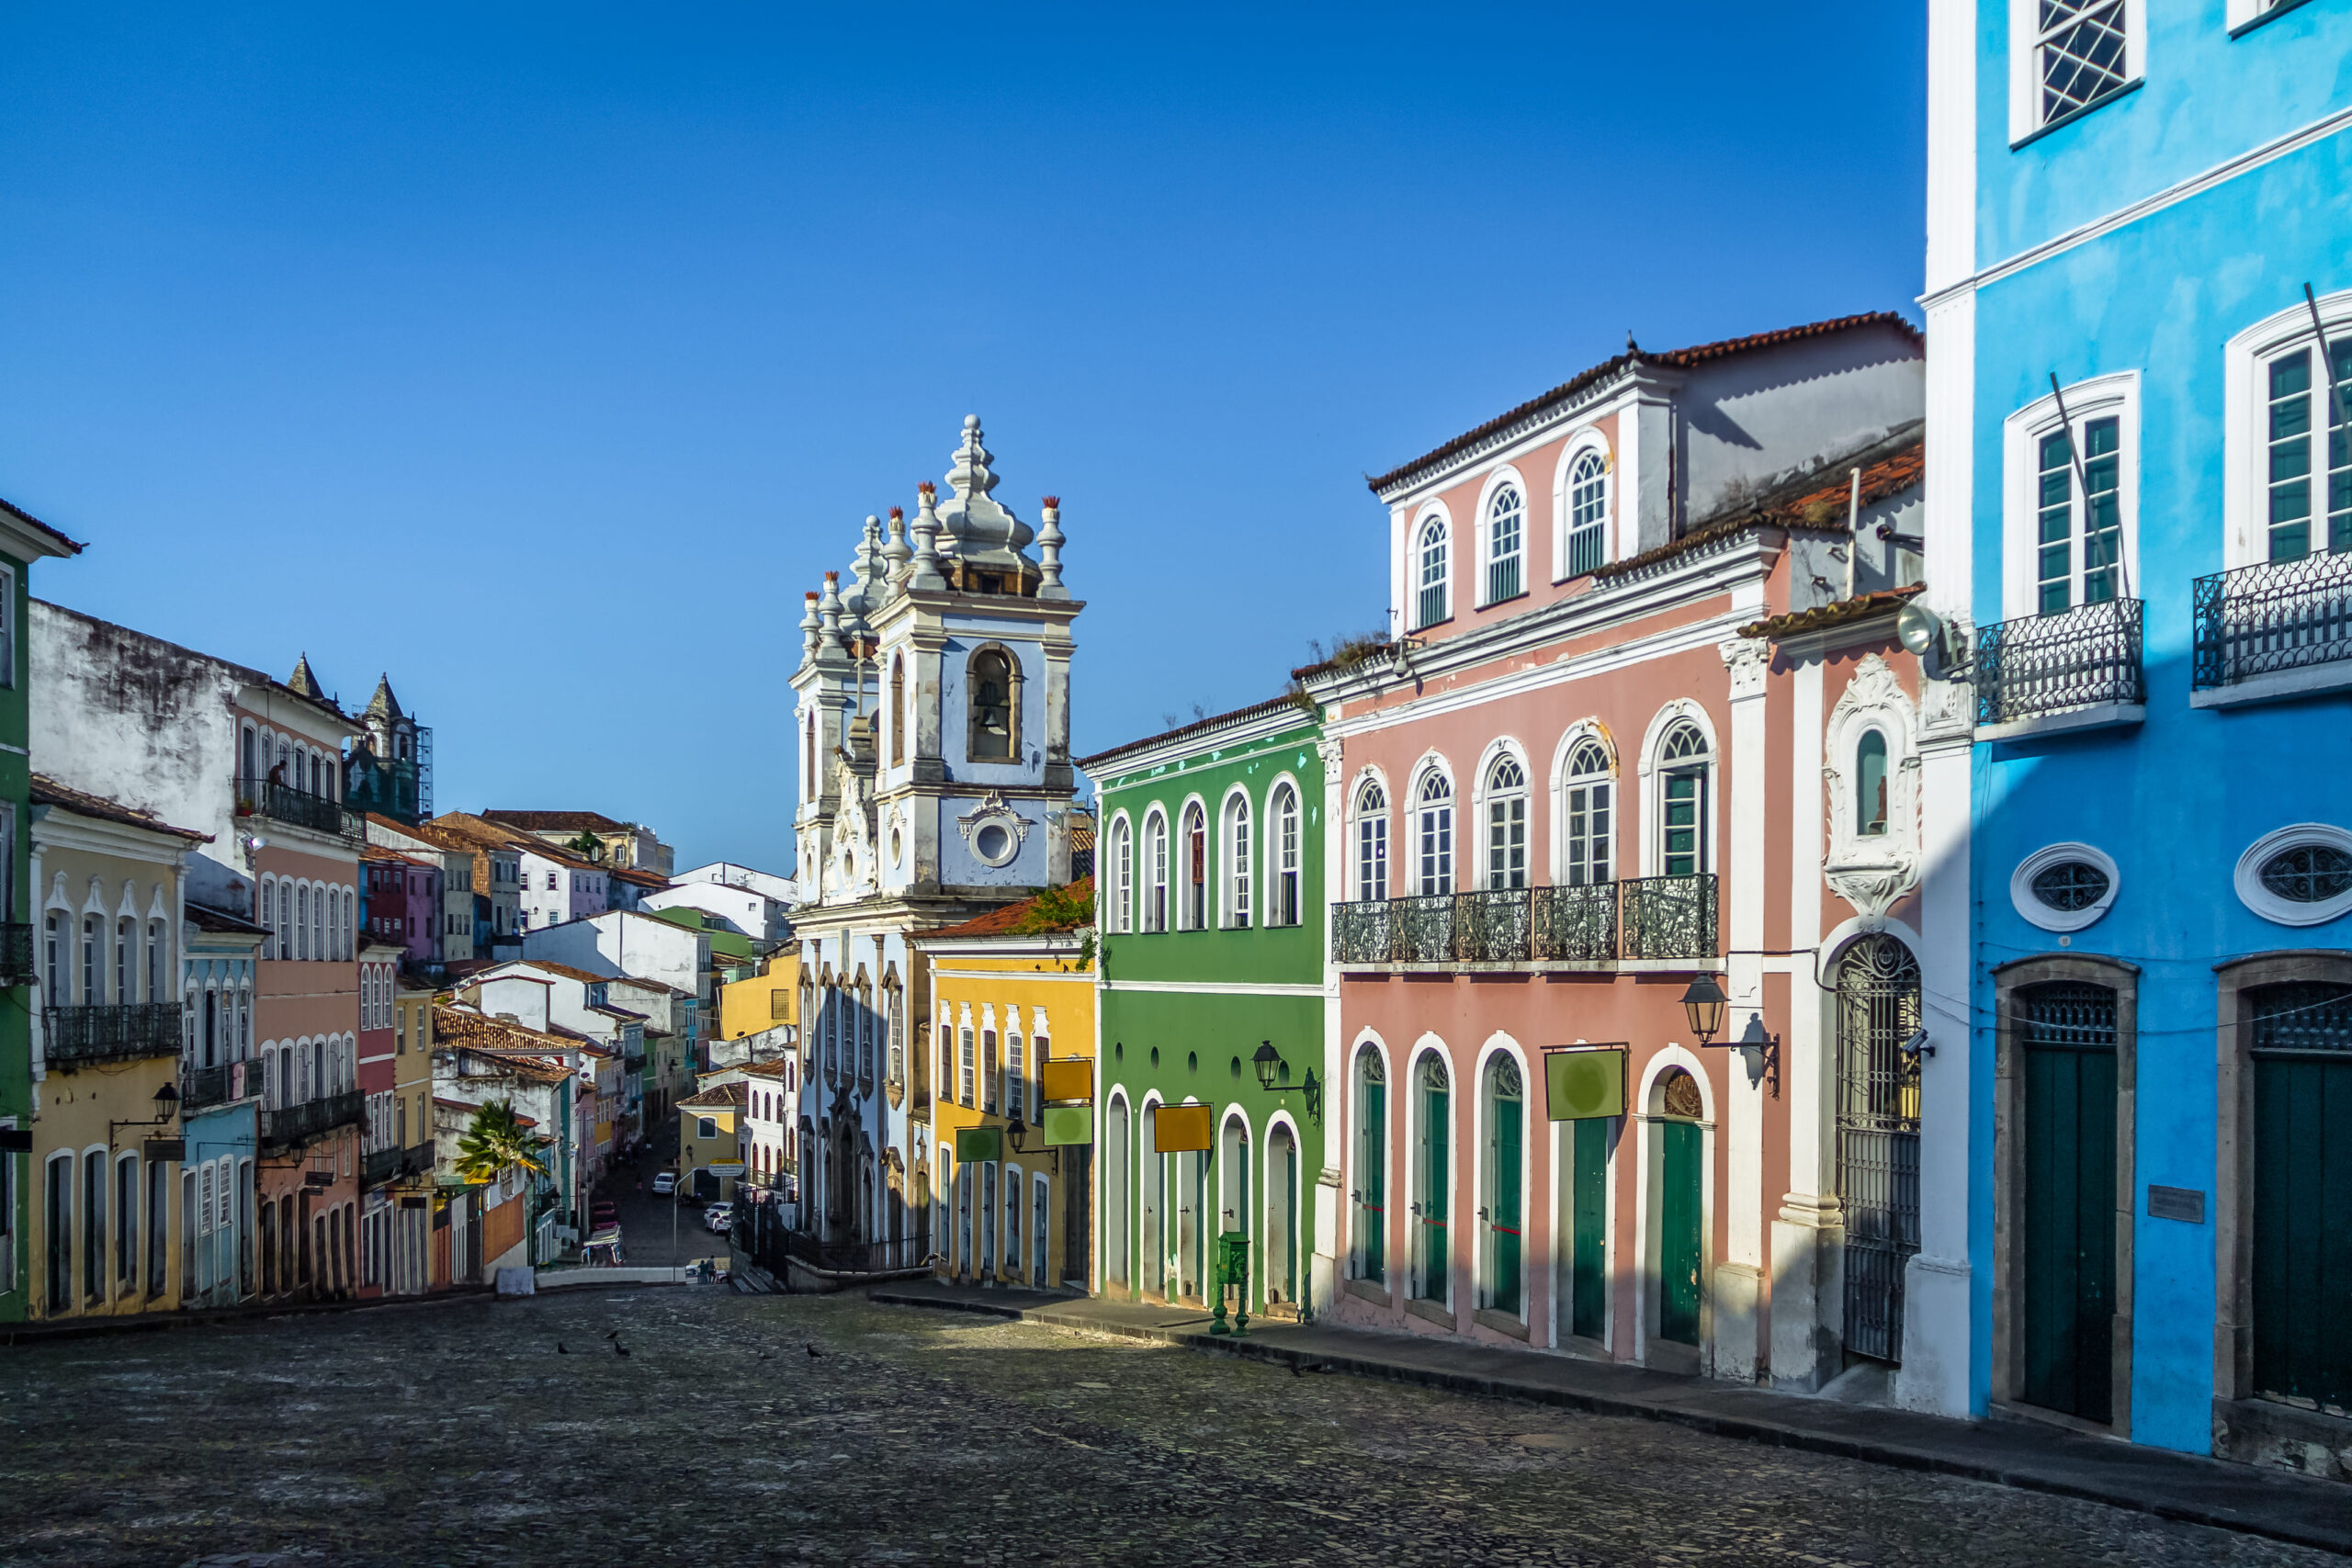 Colorida rua do Pelourinho em Salvador, Bahia, com casas históricas pintadas de diferentes cores. Uma igreja barroca com duas torres pode ser vista ao fundo. O céu é azul e a rua está vazia, criando uma atmosfera tranquila.